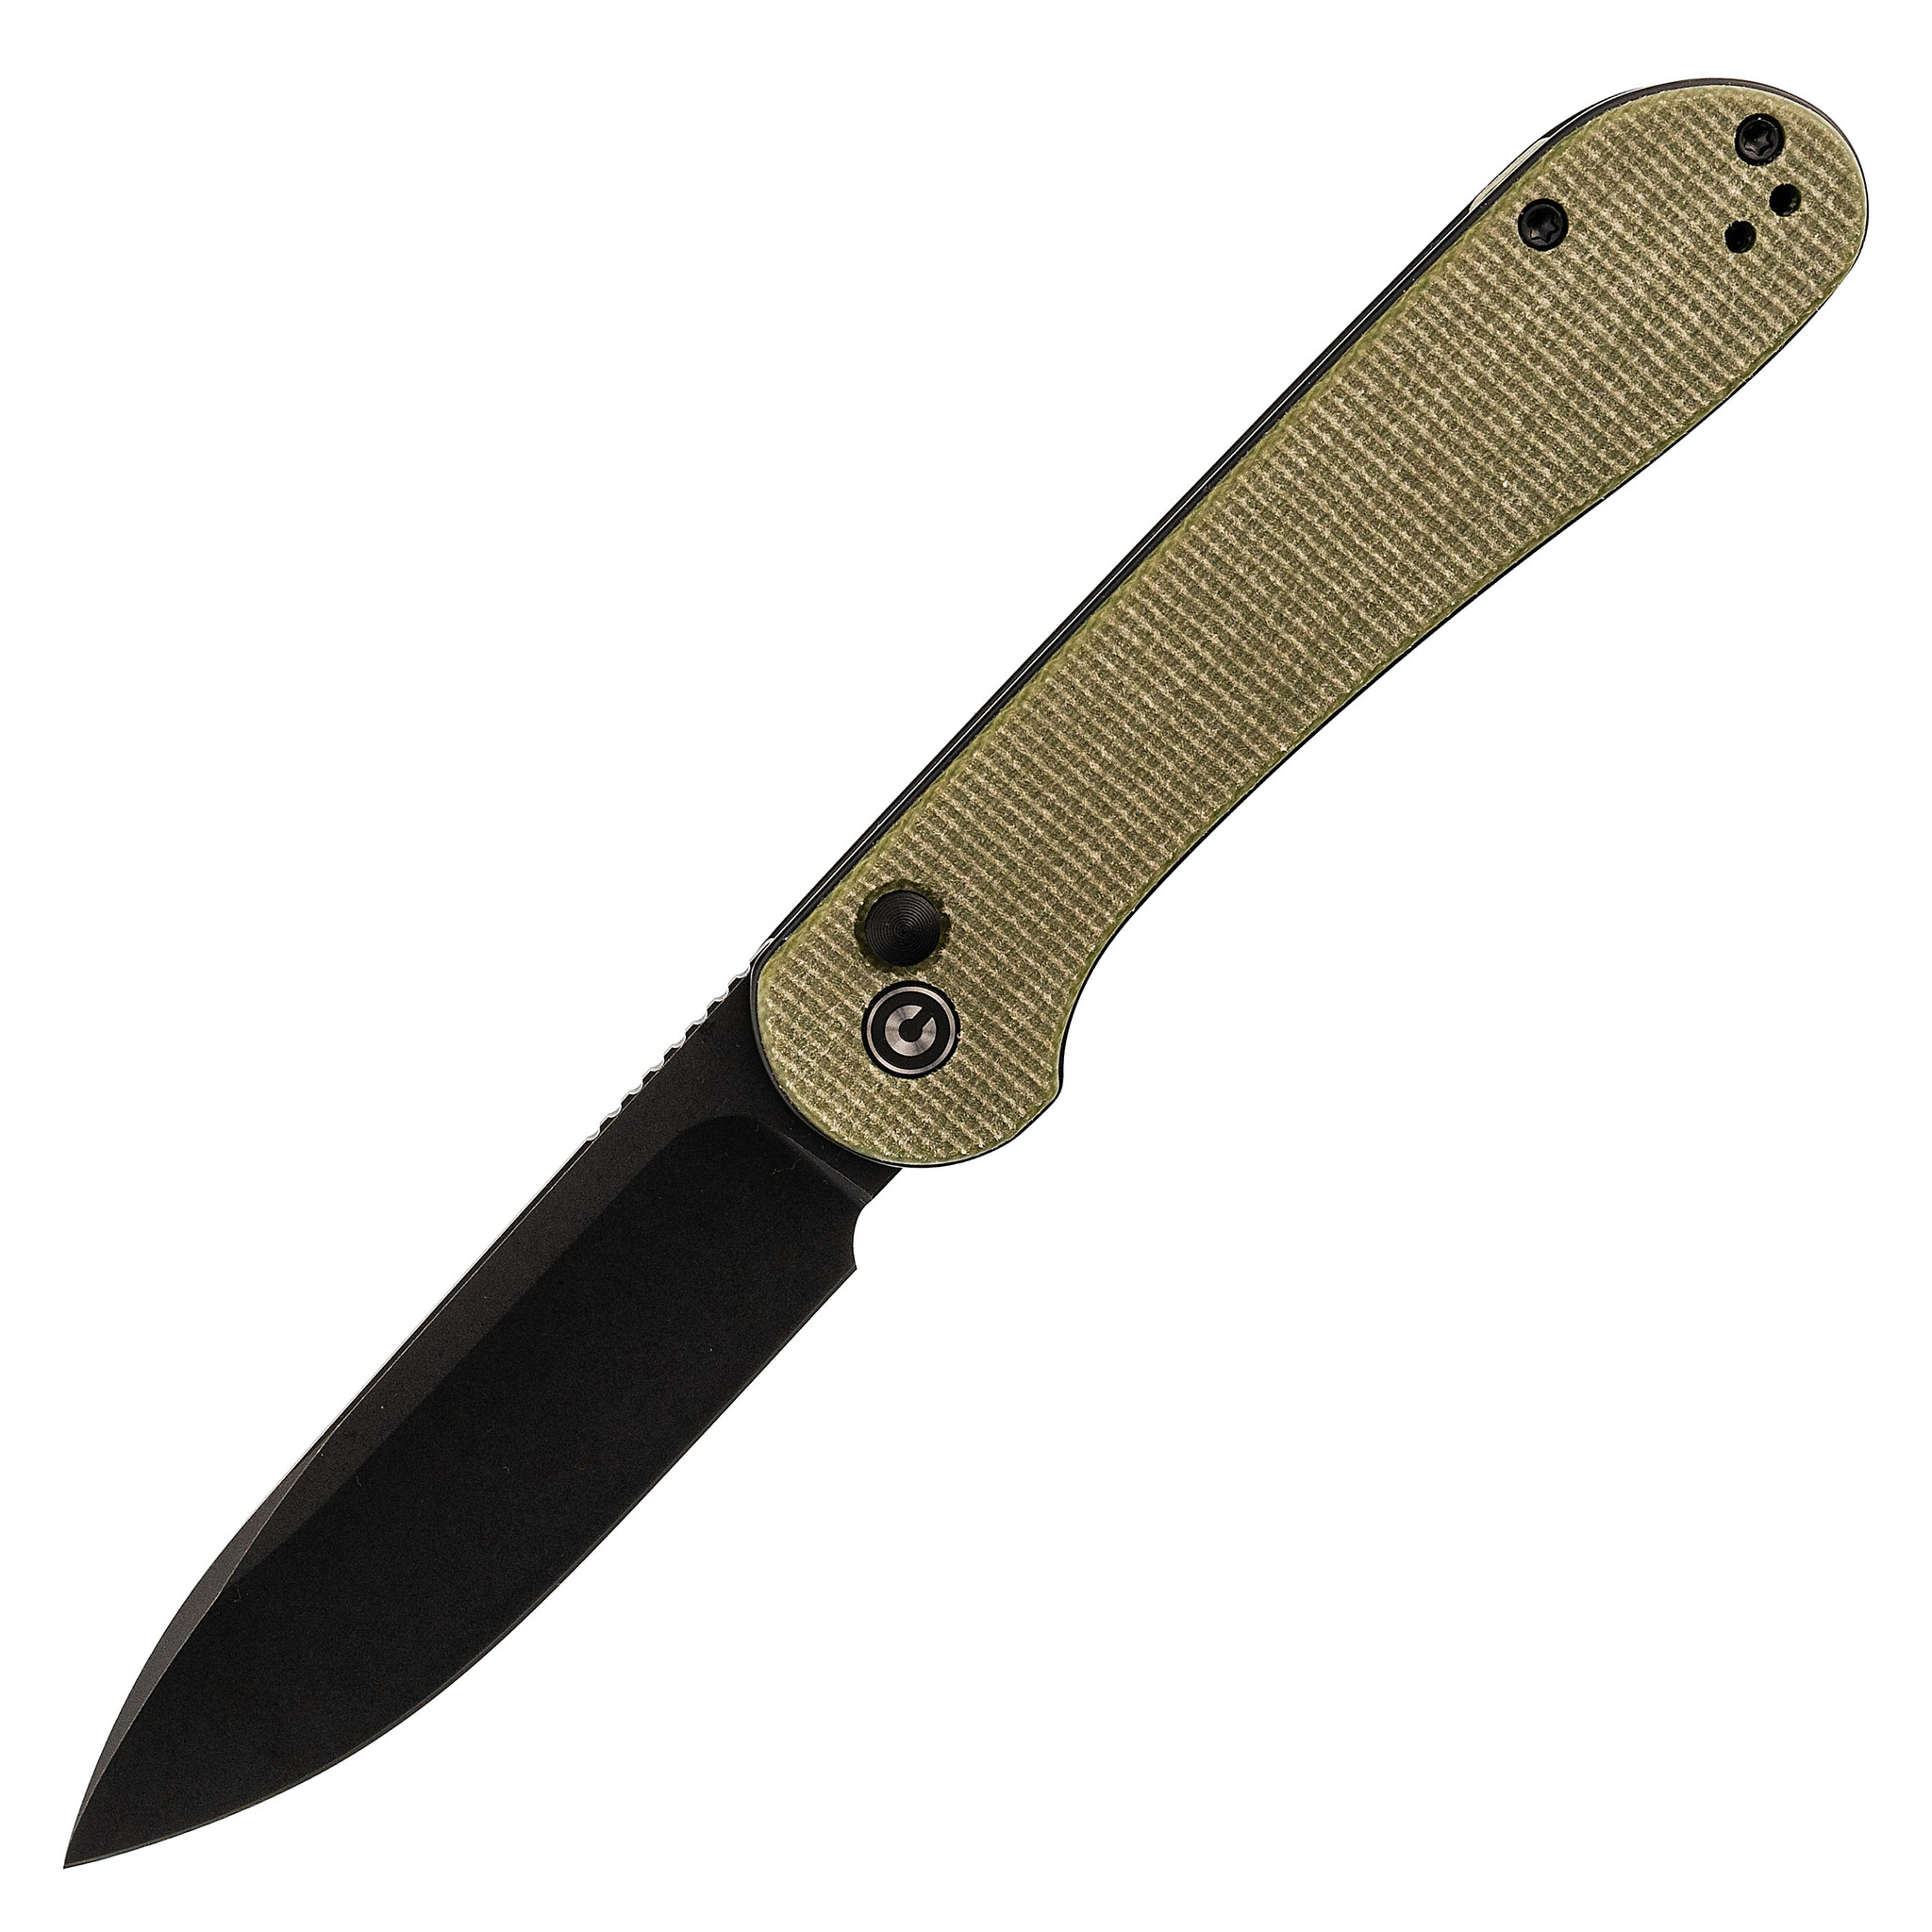 Складной нож Civivi Knives Elementum Button Lock 8.8 см, сталь Sandvik 14C28N, рукоять Olive Micarta складной нож kizer yorkie сталь m390 рукоять micarta black